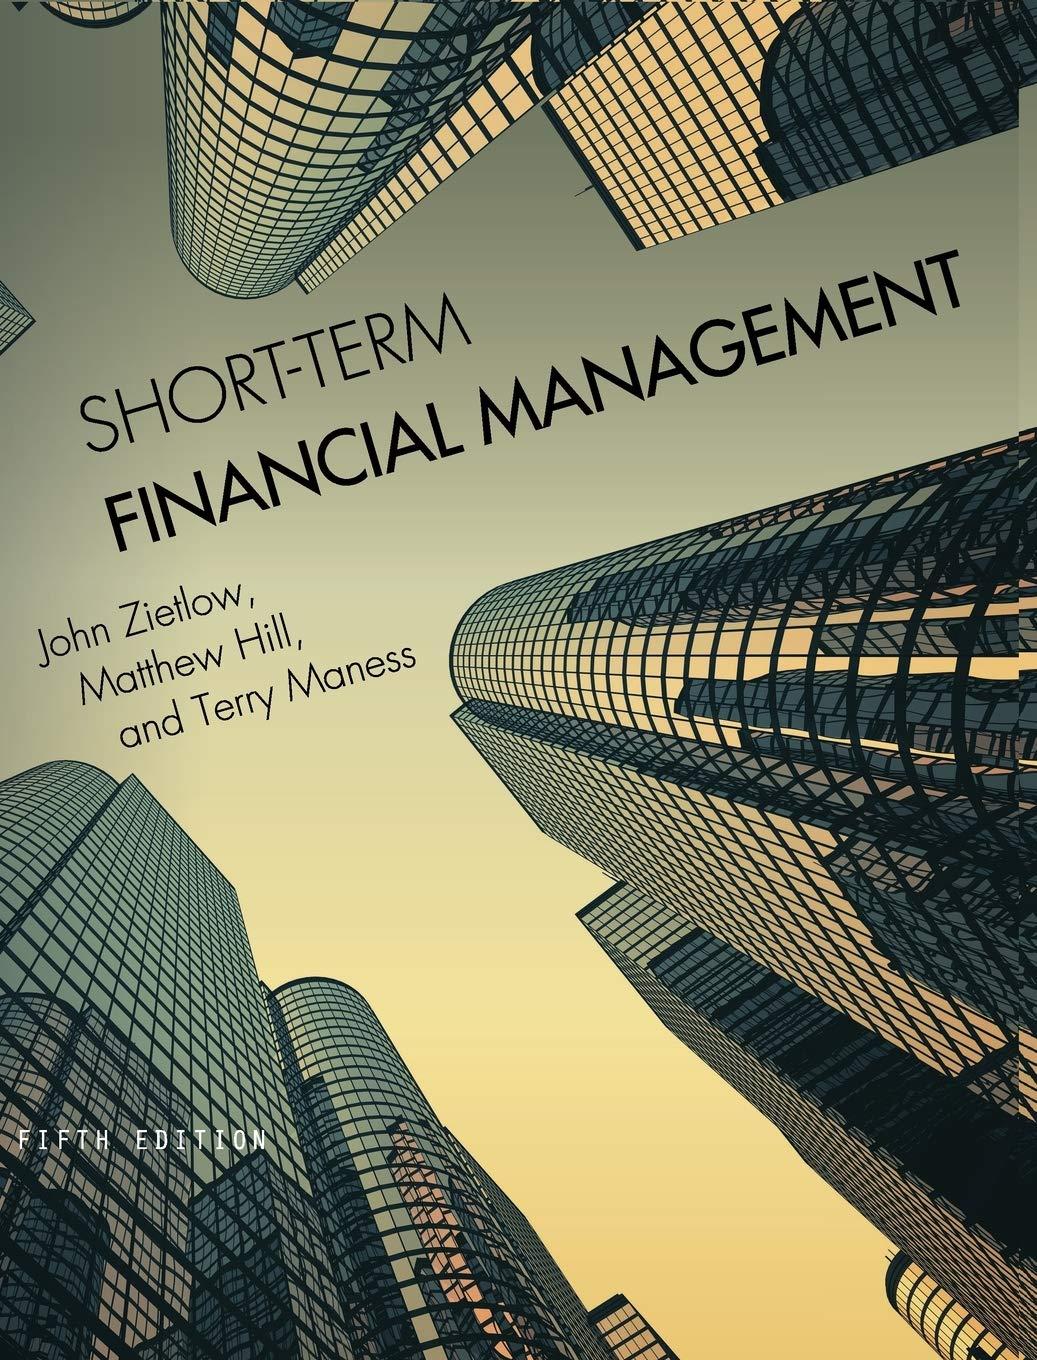 short term financial management 5th edition john zietlow, matthew hill, terry maness 1516512405, 9781516512409